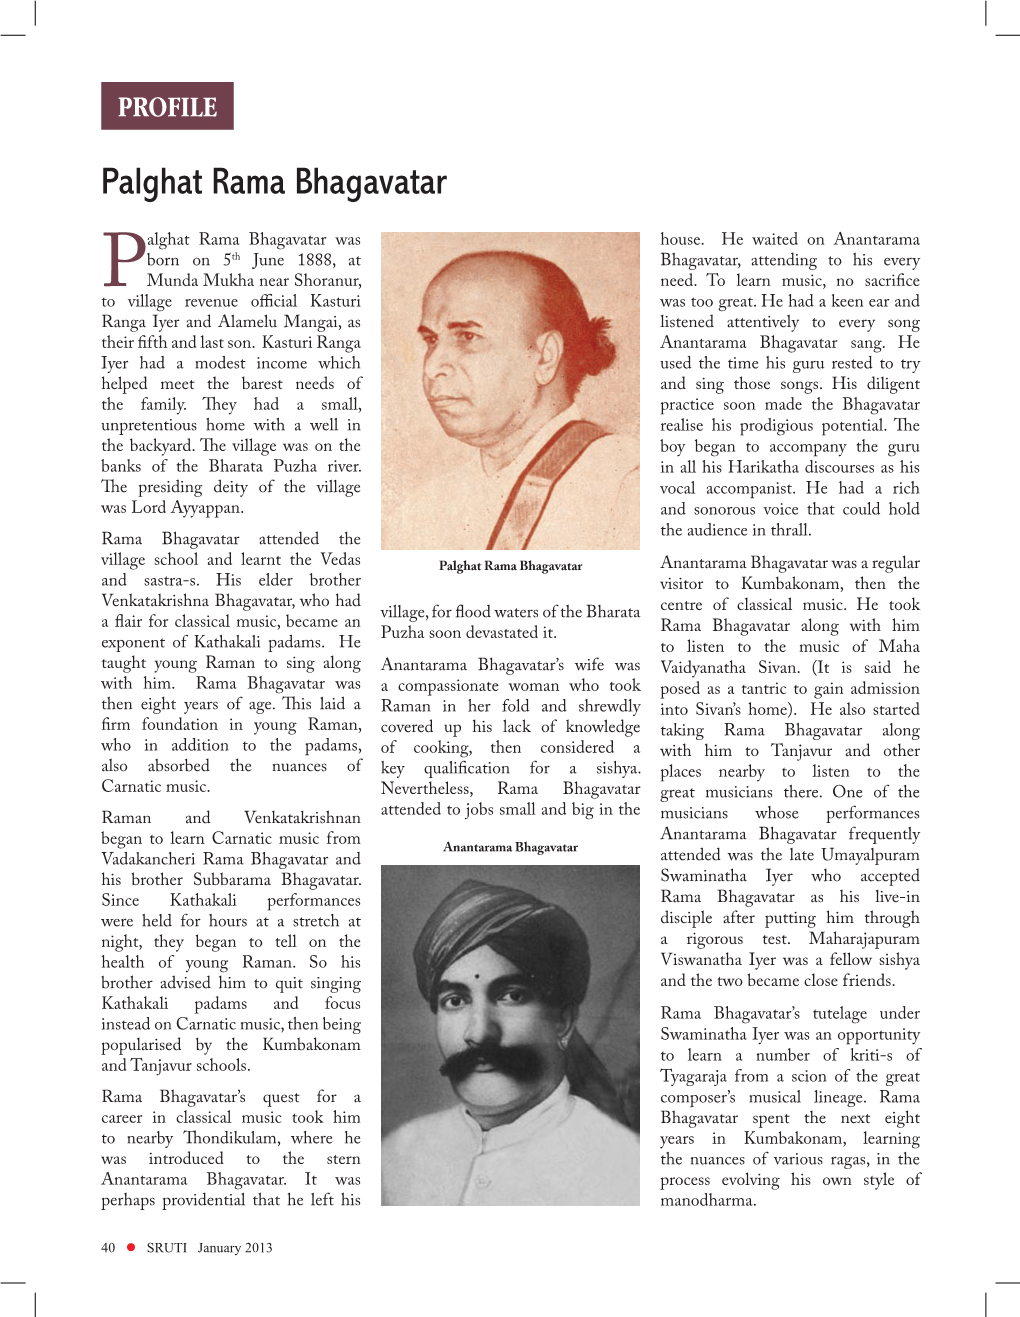 Palghat Rama Bhagavatar